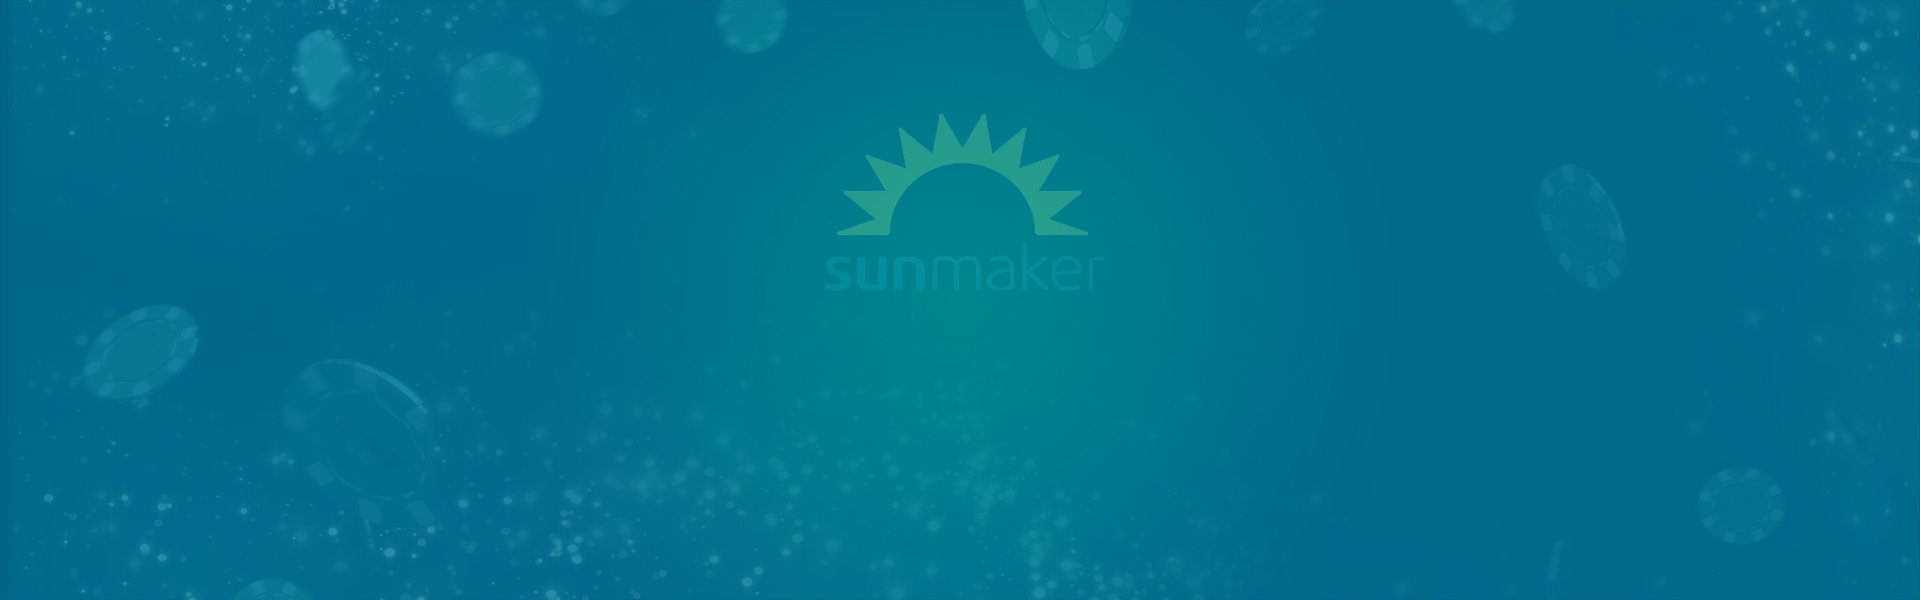 sunmaker